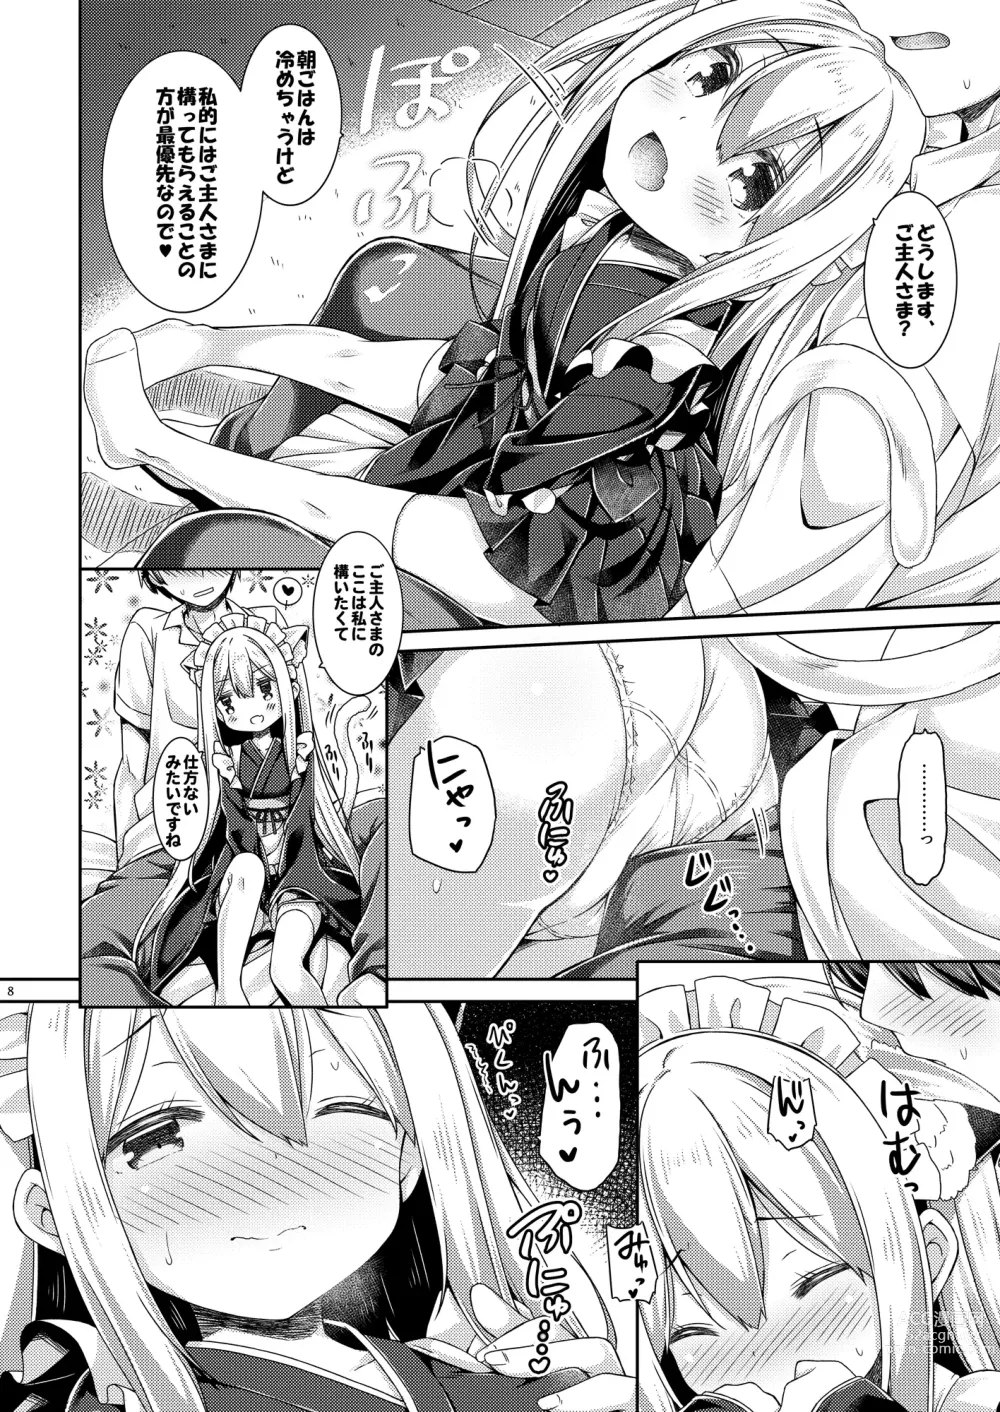 Page 9 of doujinshi Anata no Neko-chan Maid.